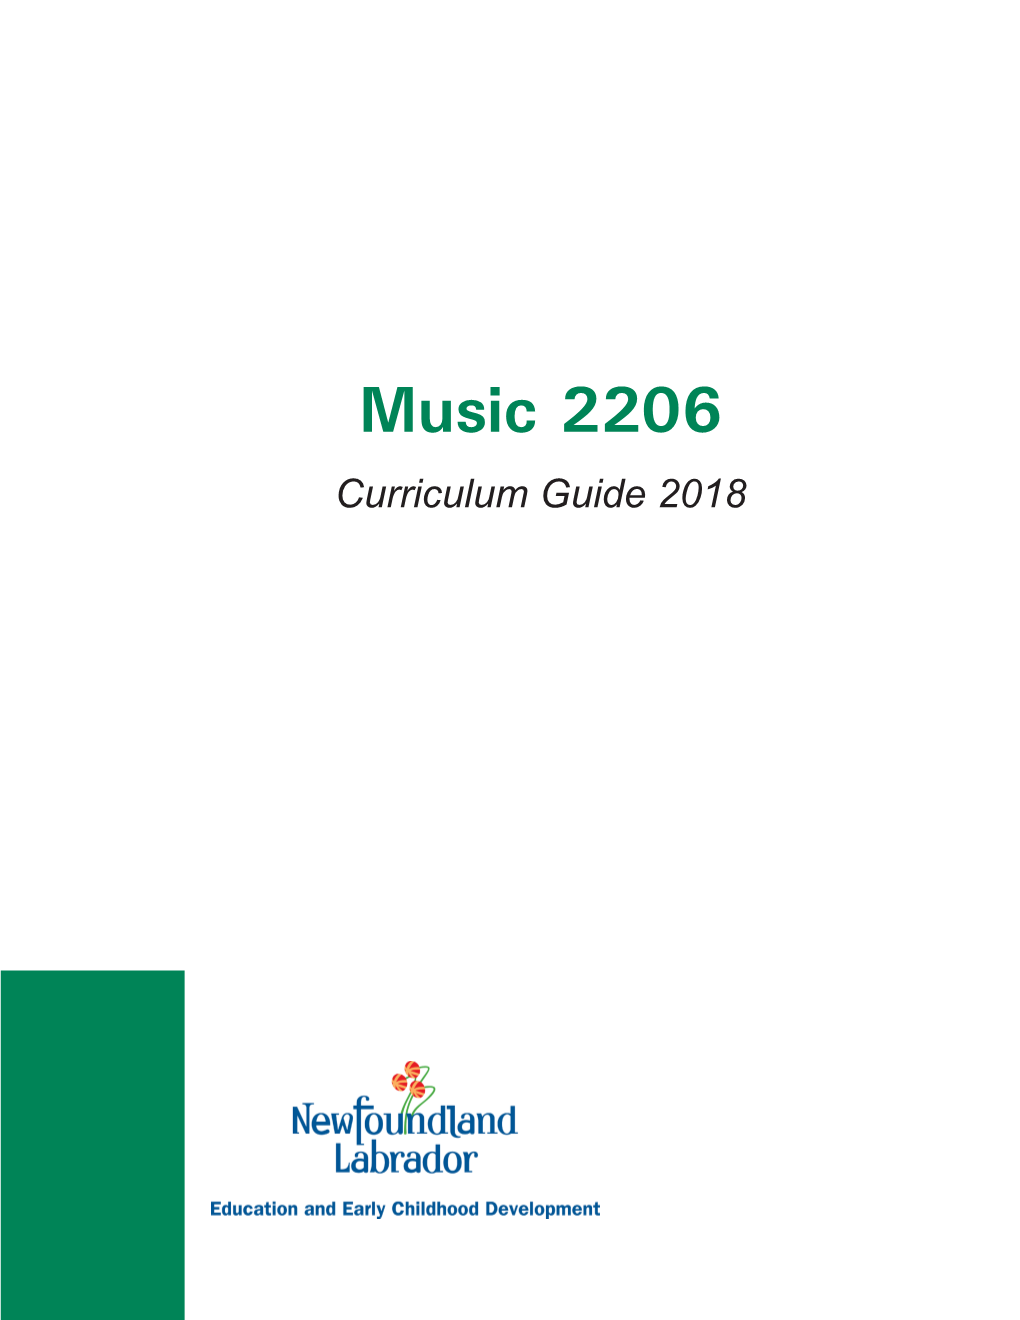 Music 2206 Curriculum Guide (2018)